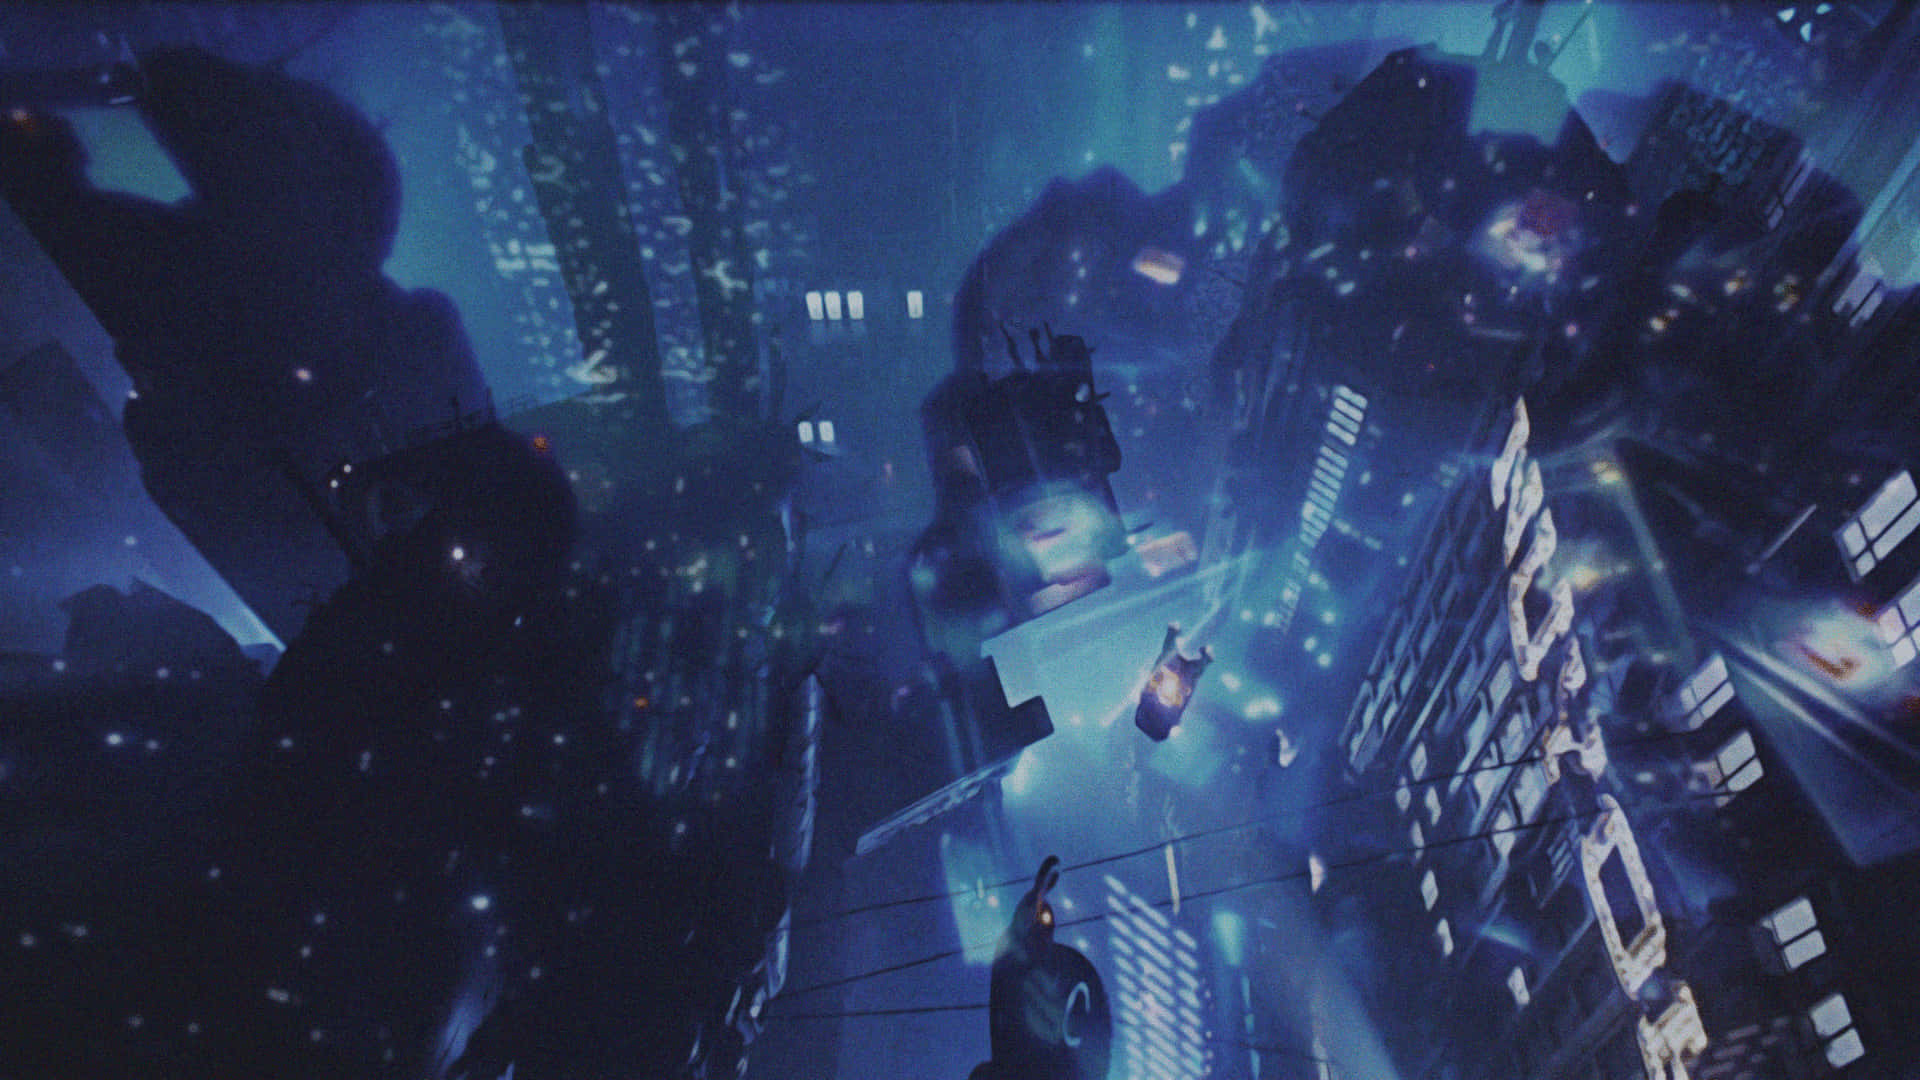 Scifi Äventyr Väntar I Den Neonbelysta Världen Av Blade Runner.